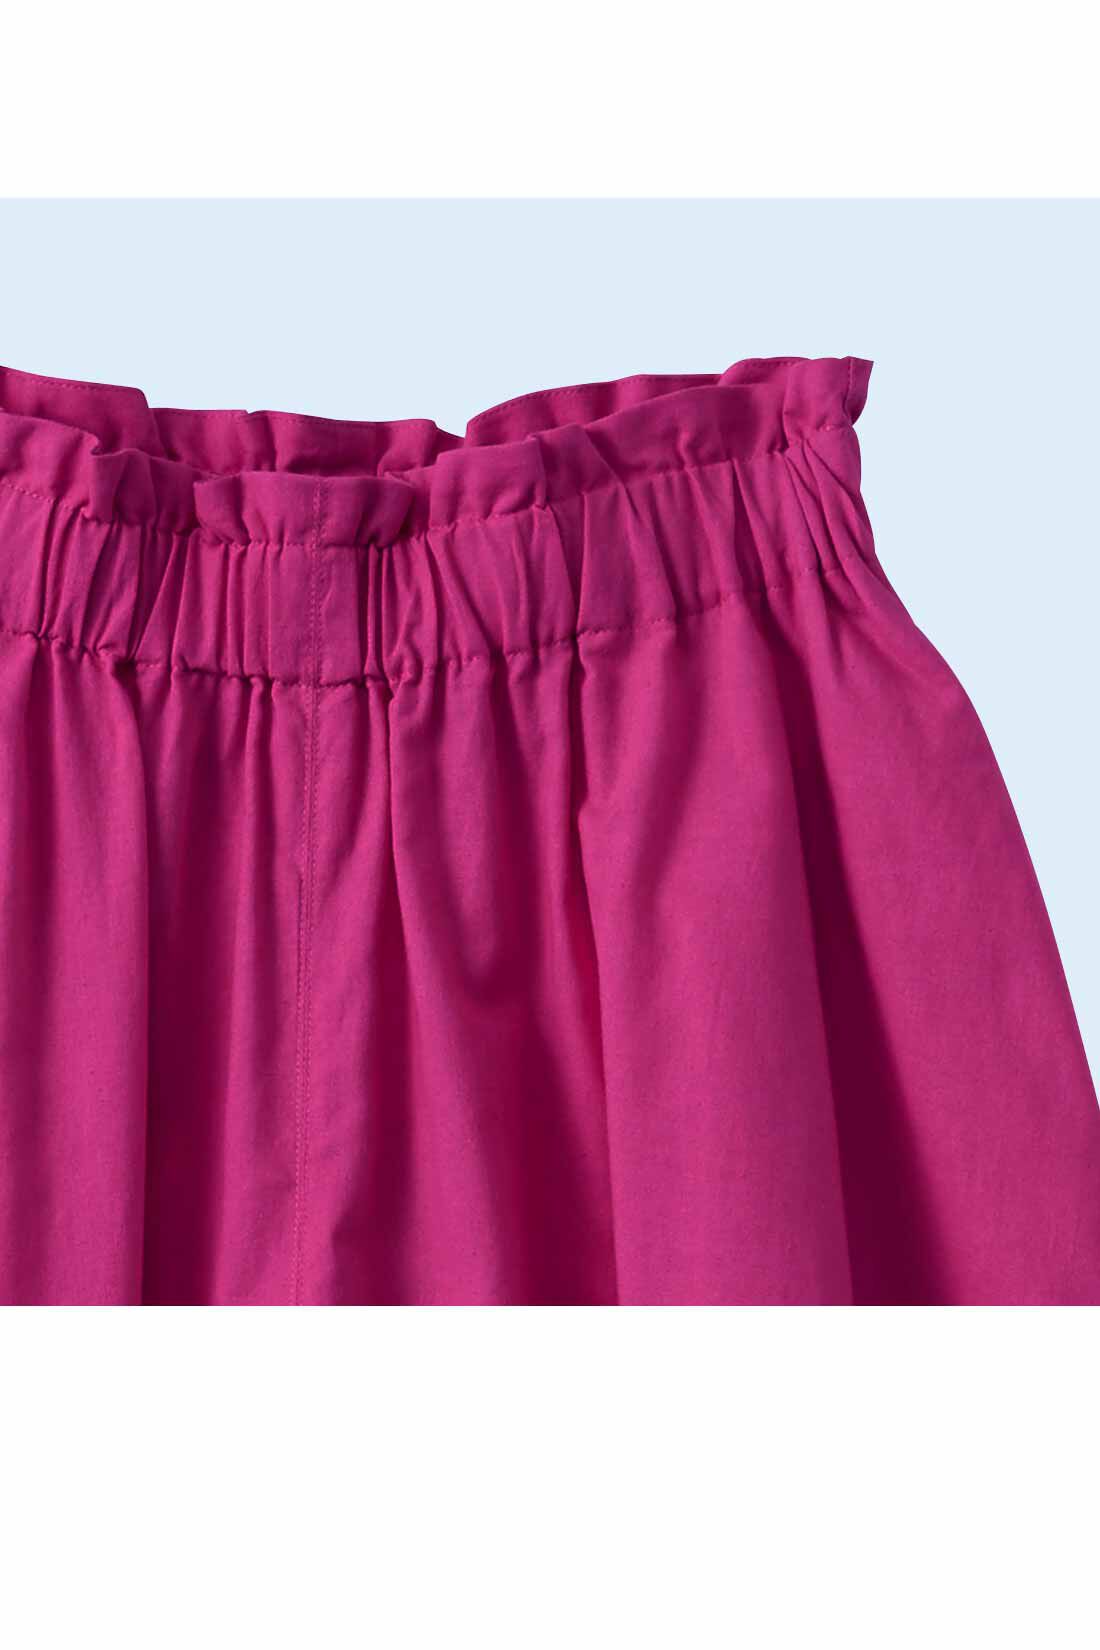 Real Stock|スカートみたいな コットンリネンのボリュームガウチョパンツ〈ピンク〉|ウエストは総ゴム仕様。フリフリデザインが◎。